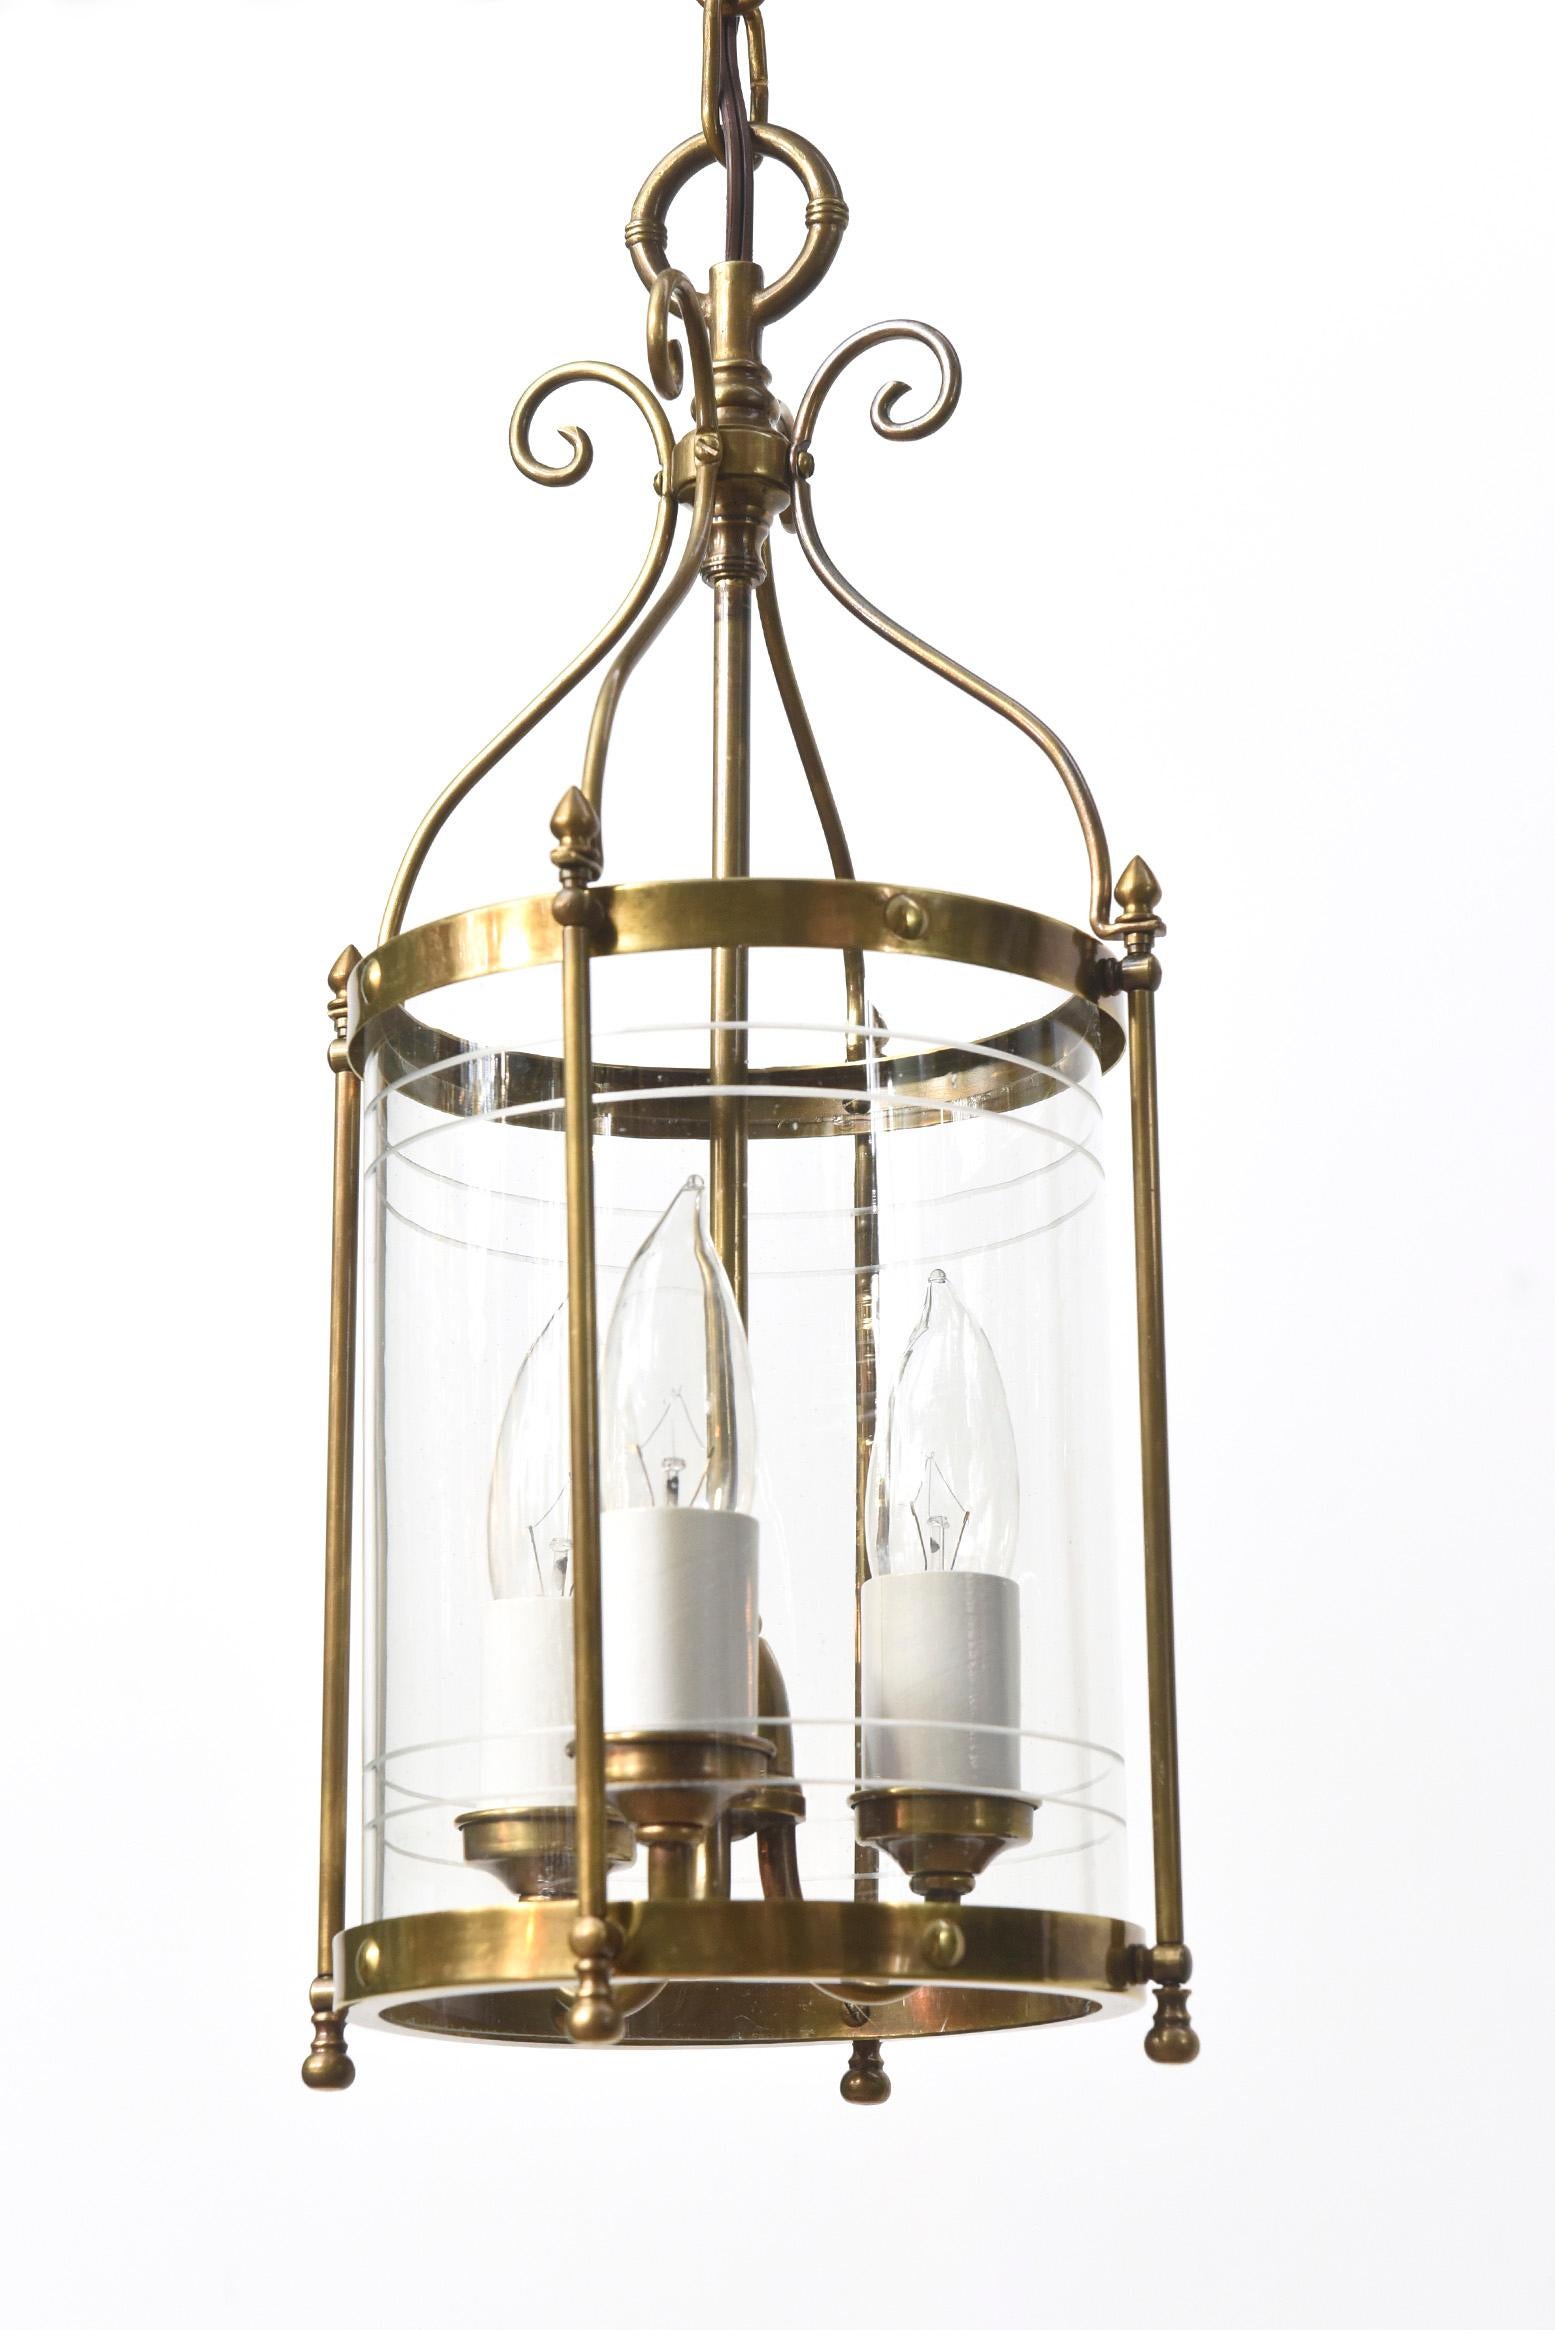 Petite lanterne en laiton et verre avec un cylindre en verre gravé et une grappe de trois lumières. Début du 20e siècle, Europe de l'Est. Entièrement restaurée avec une finition en laiton antique léger, recâblée et prête à être